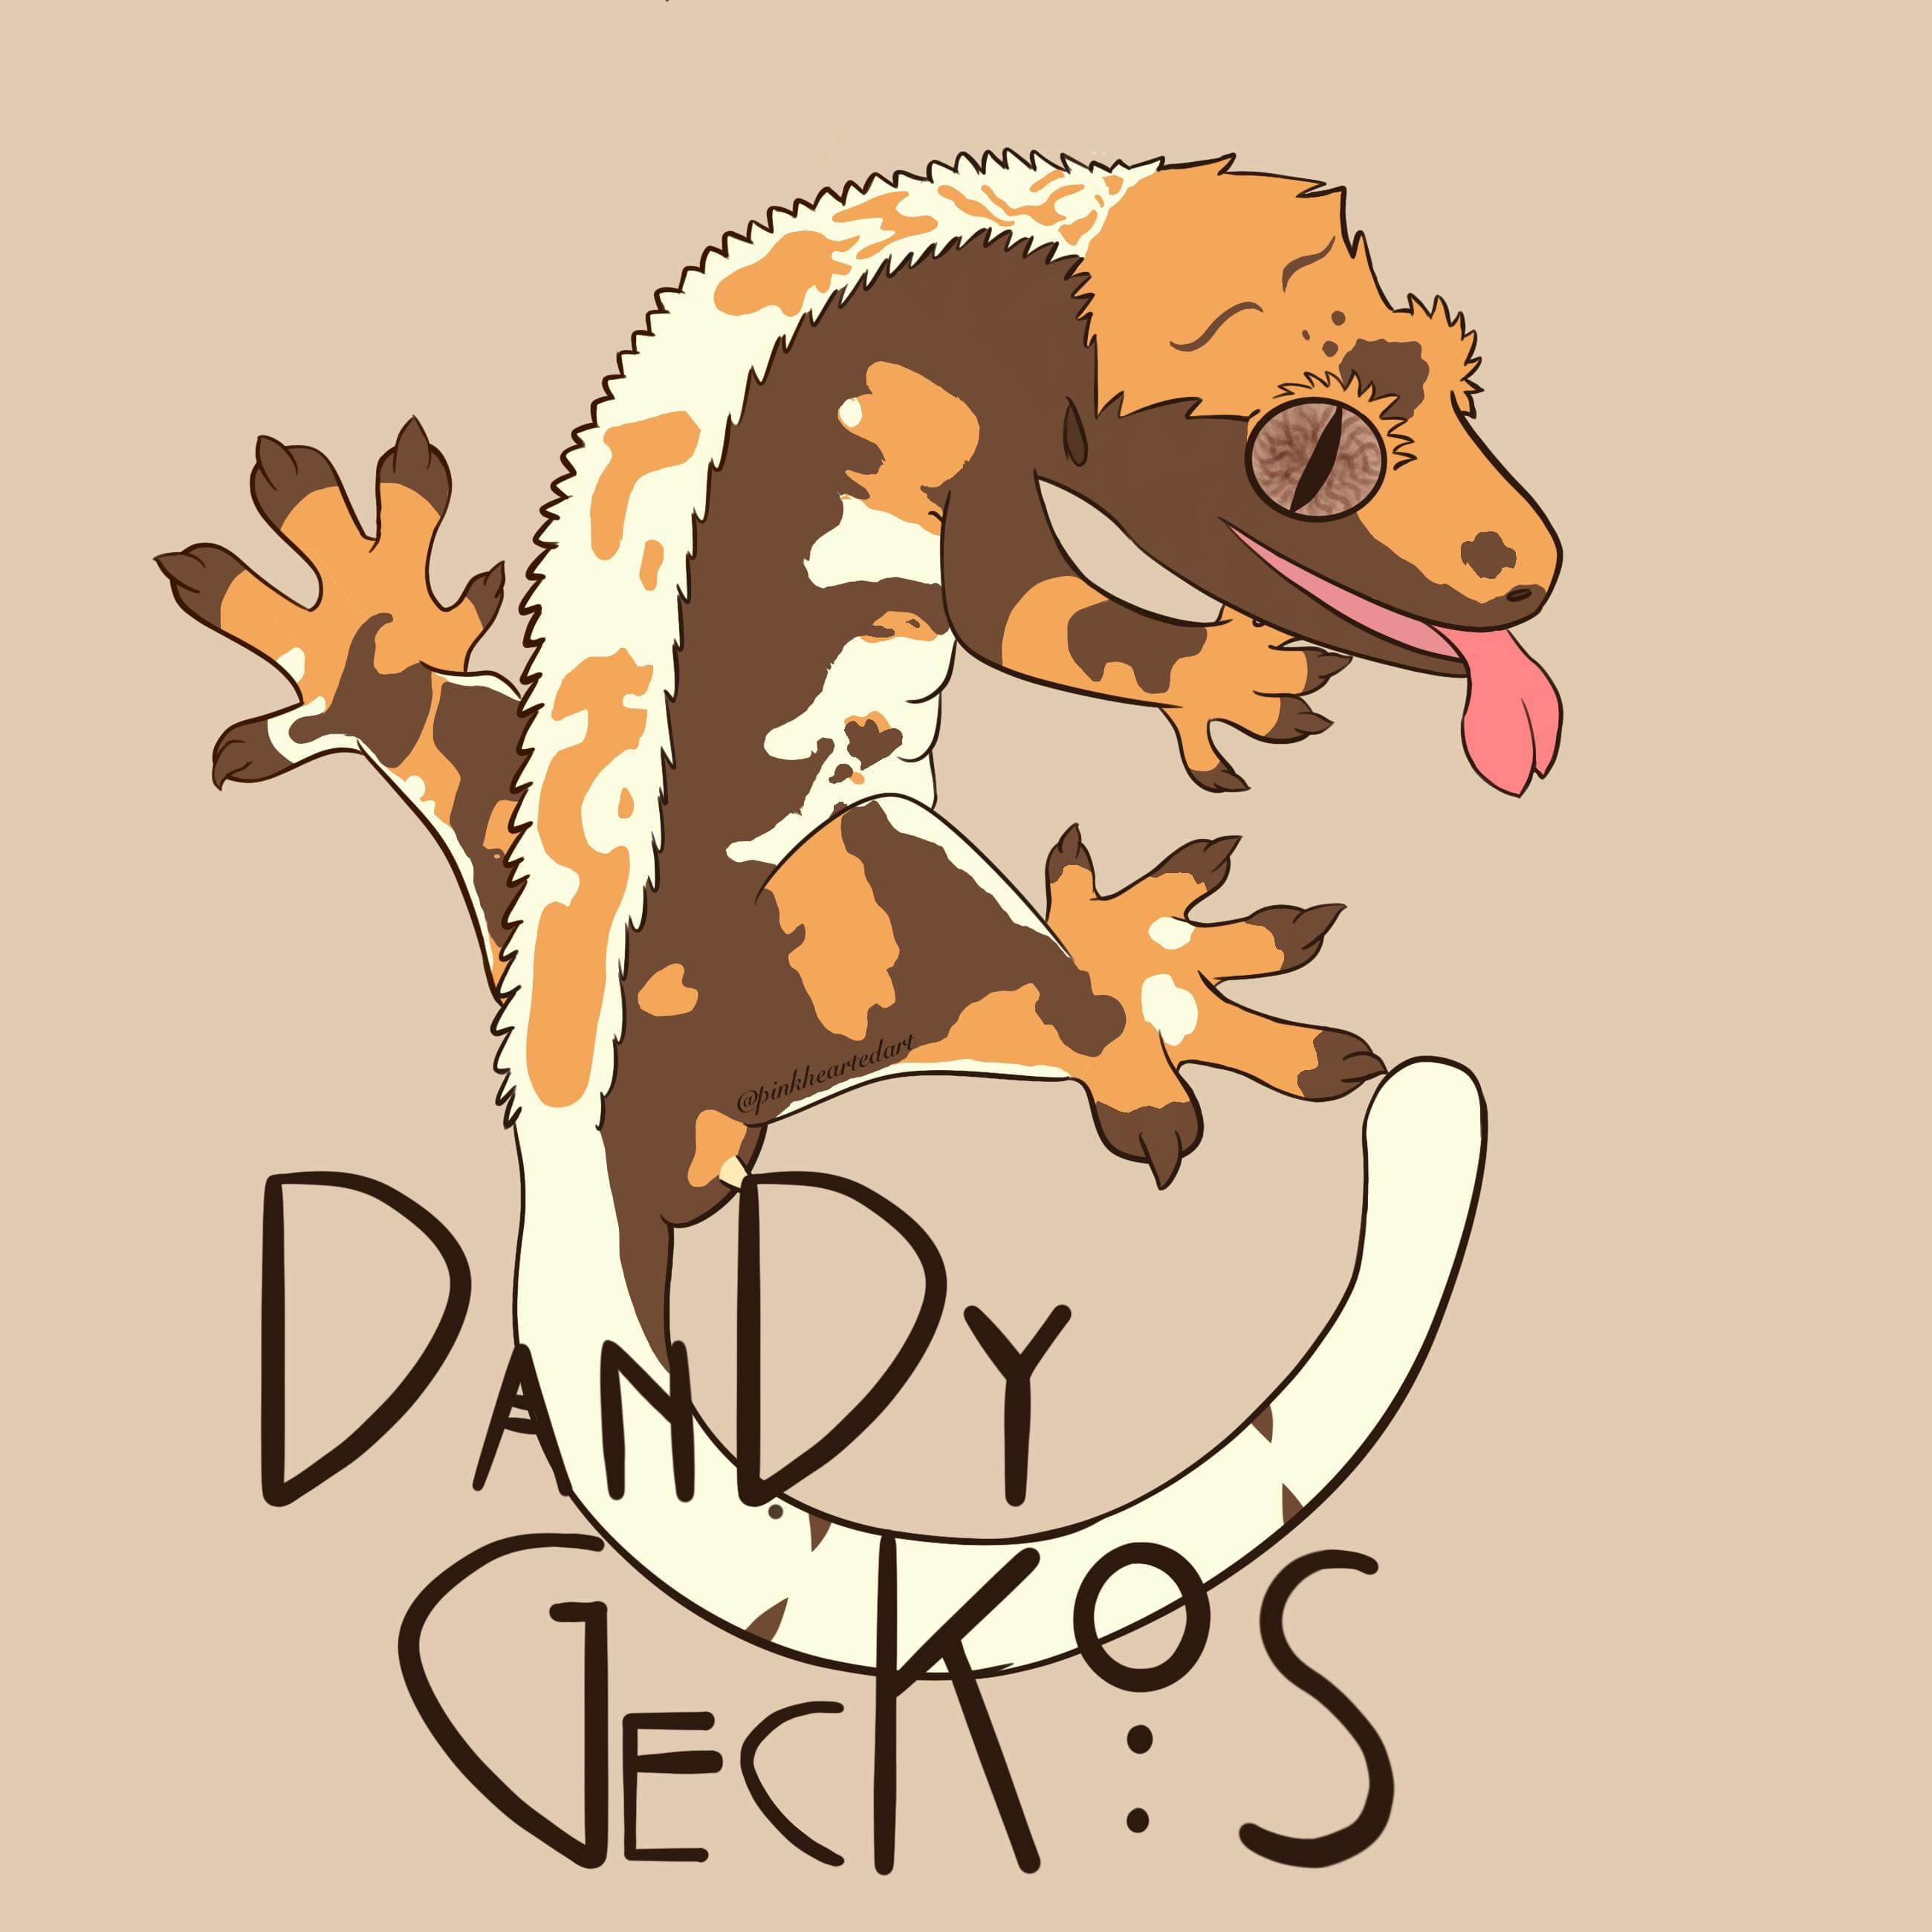 Dandy Geckos